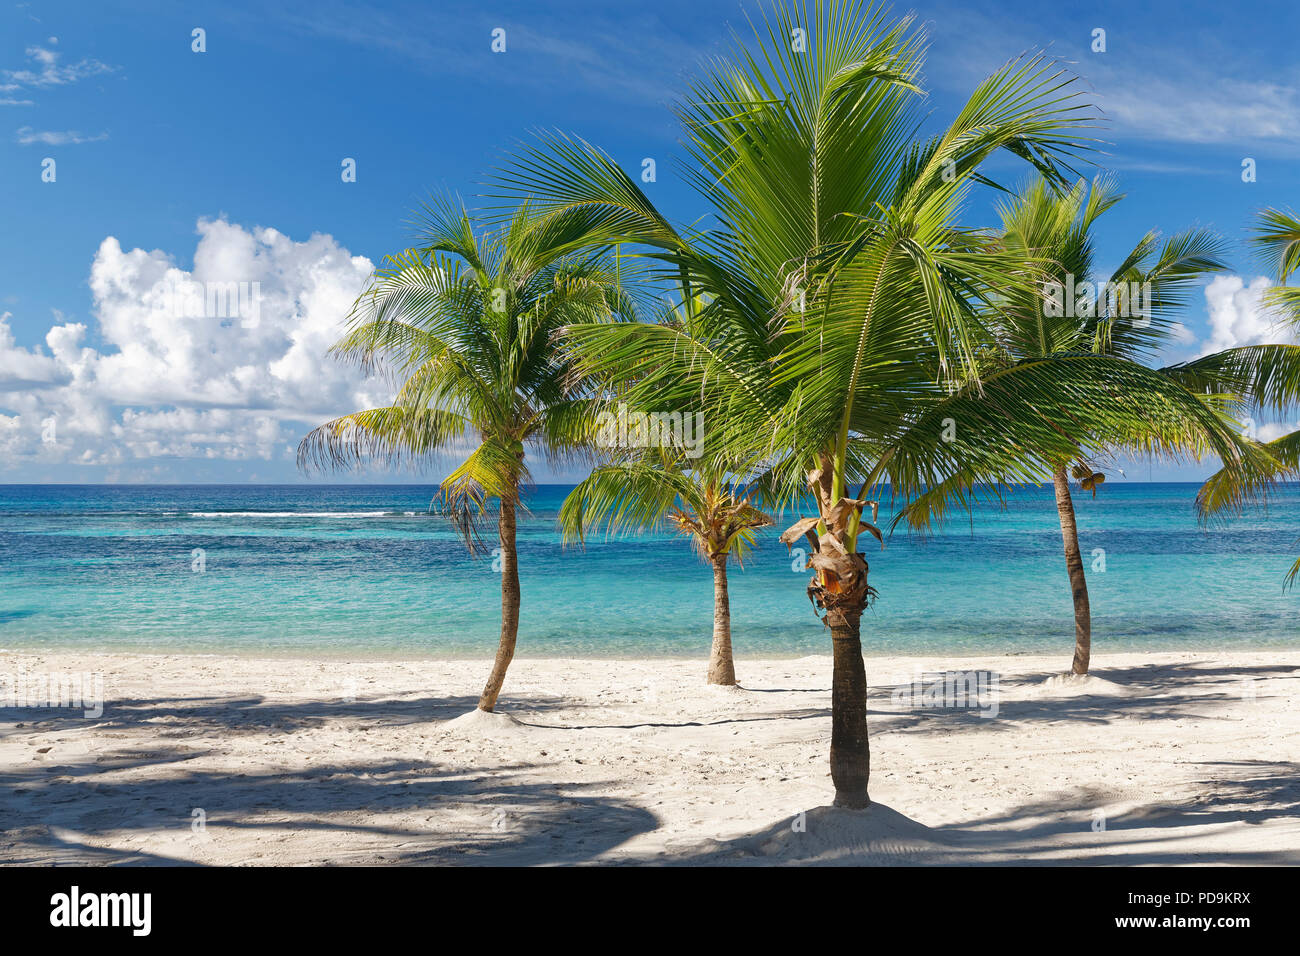 Sueño de playa, playa de arena con palmeras y el mar color turquesa, Parque Nacional del Este, Isla Saona, el Caribe, República Dominicana Foto de stock